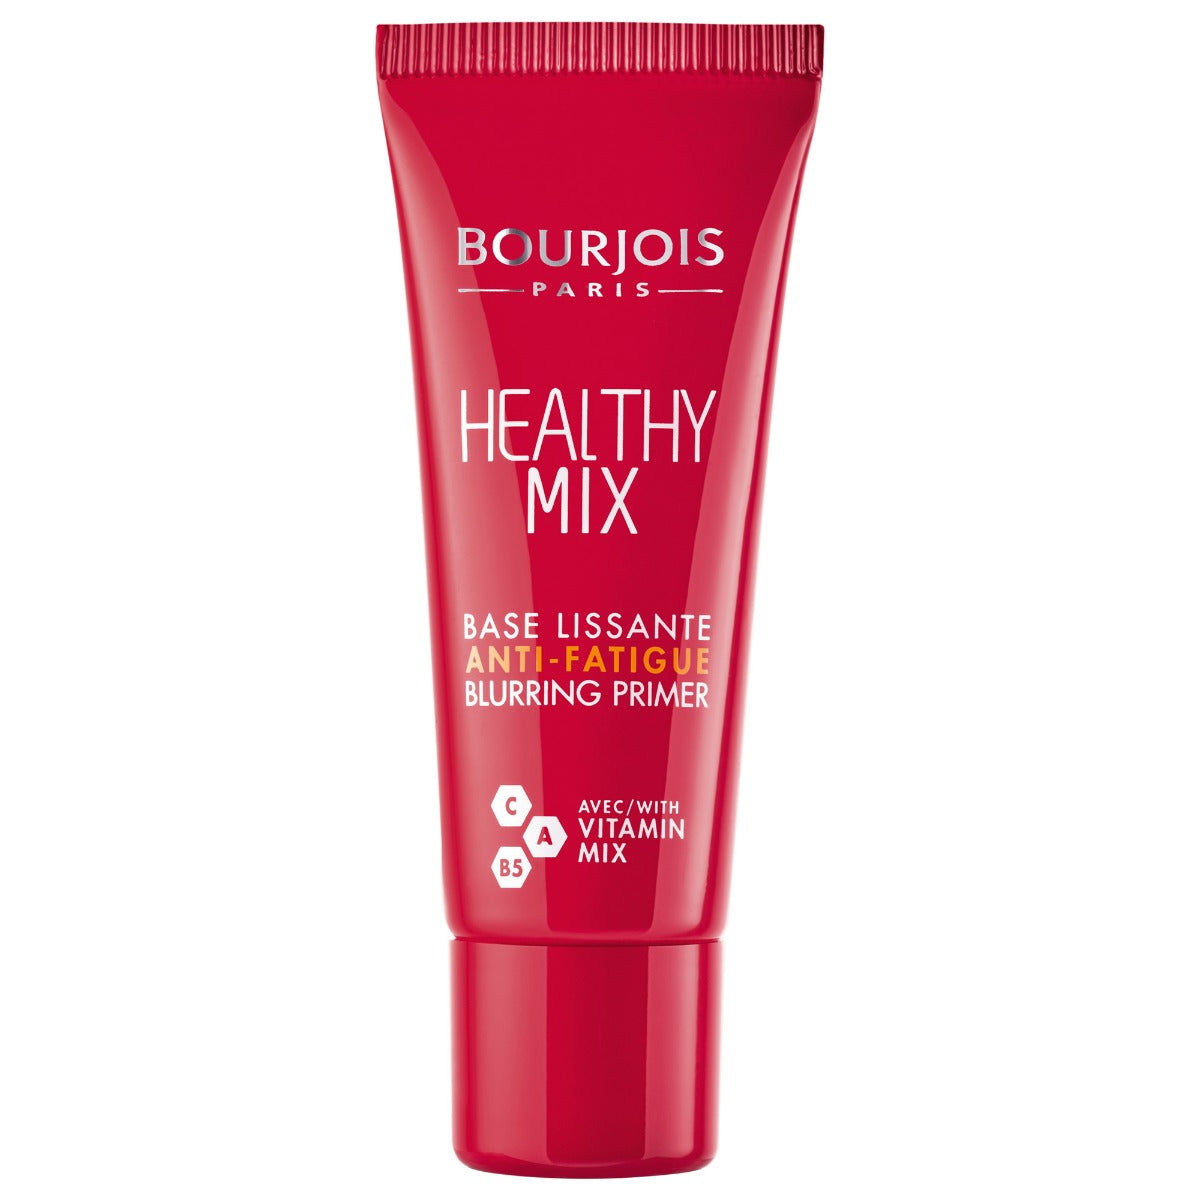 Bourjois - Healthy Mix Anti-Fatigue Blurring Primer